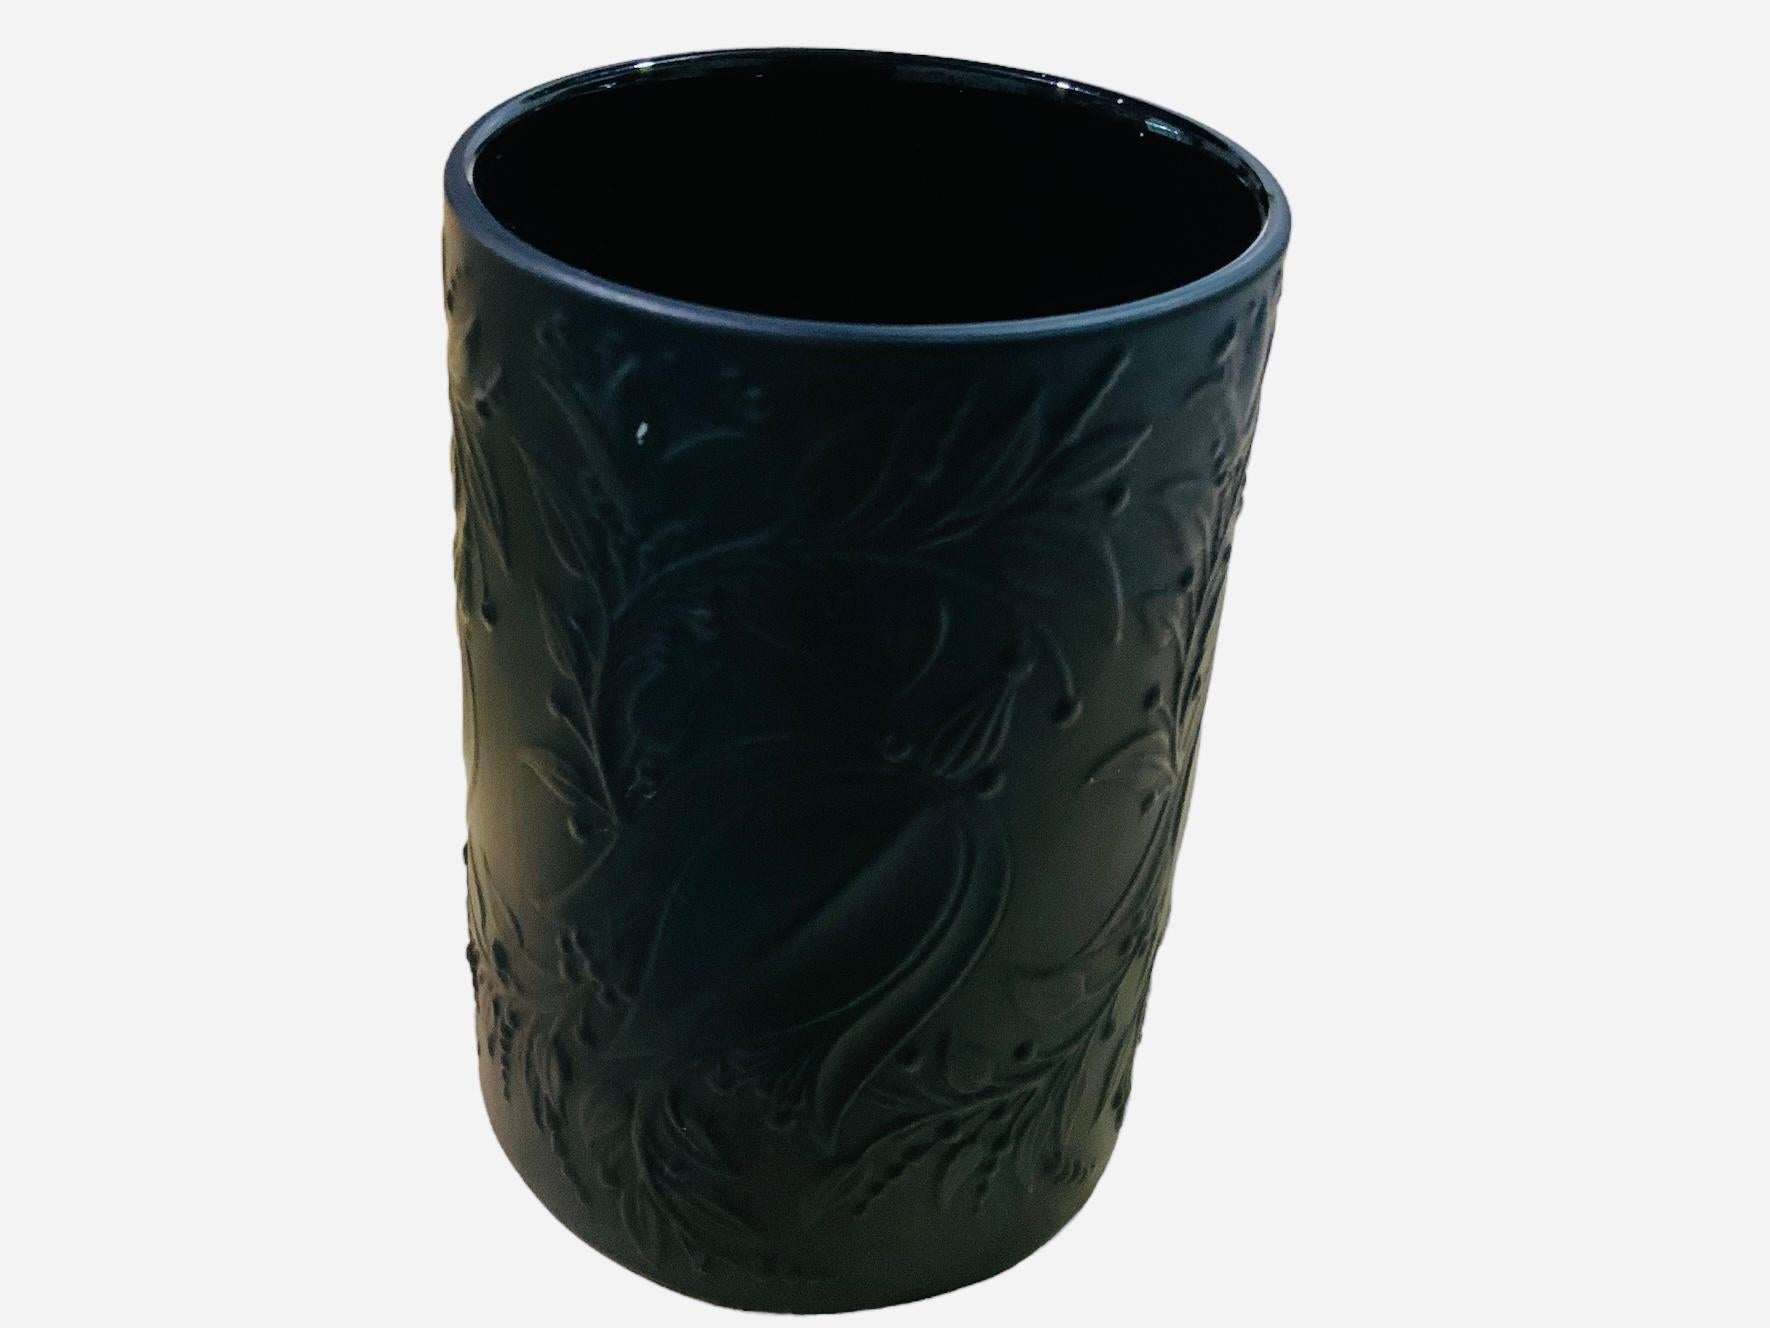 German Rosenthal Studio Bjorn Winblad Black Porcelain Small Vase For Sale